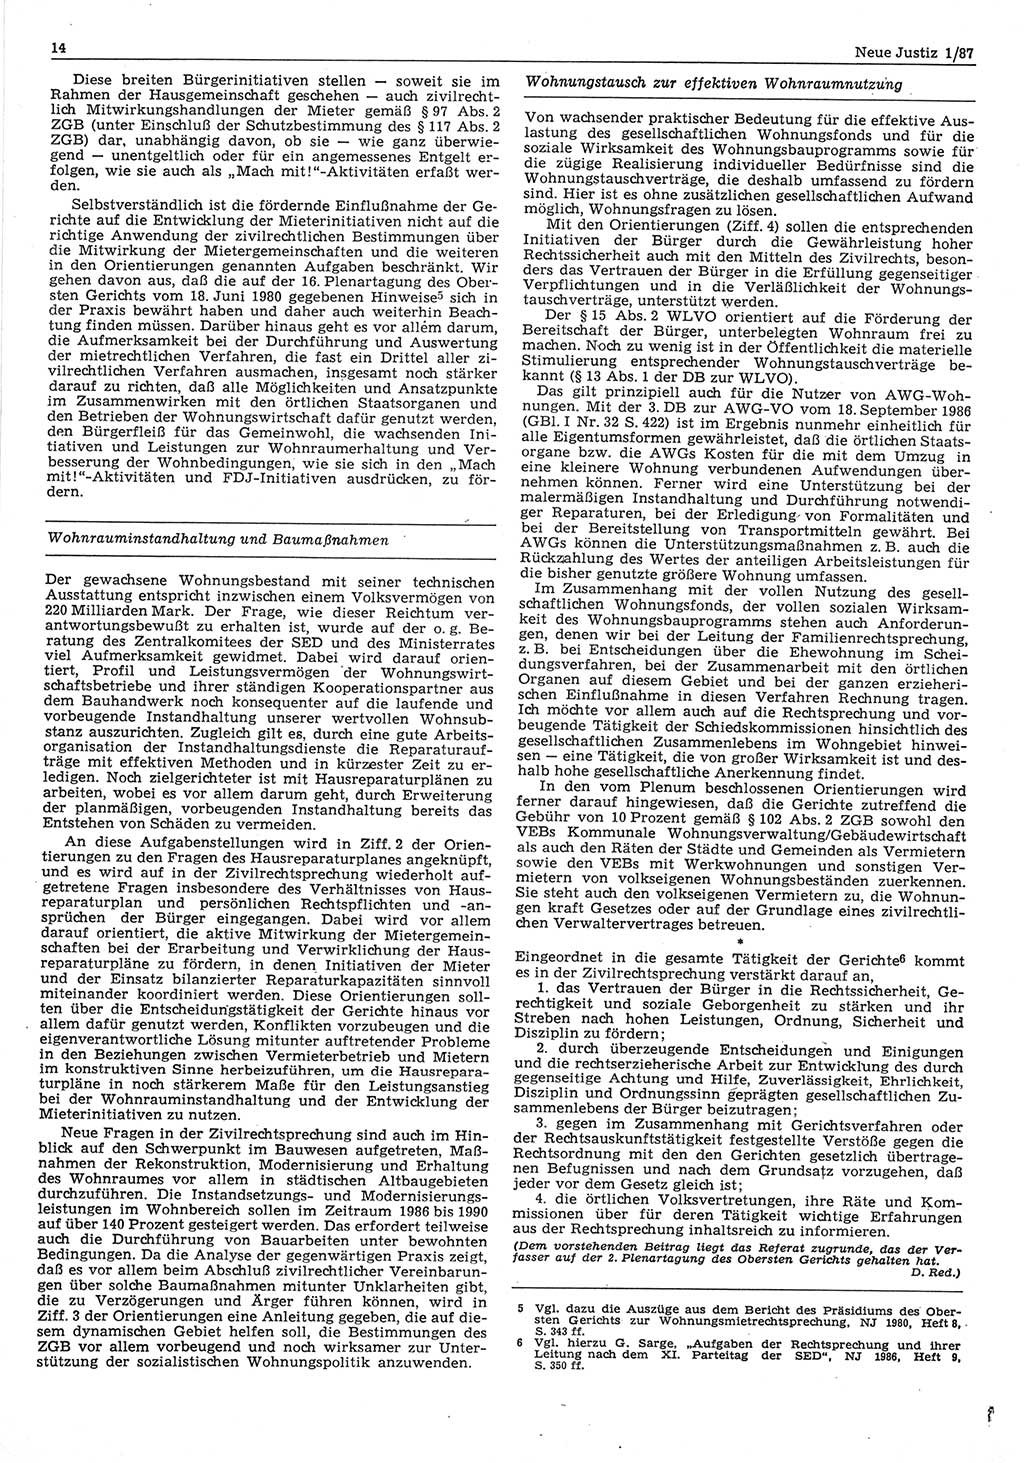 Neue Justiz (NJ), Zeitschrift für sozialistisches Recht und Gesetzlichkeit [Deutsche Demokratische Republik (DDR)], 41. Jahrgang 1987, Seite 14 (NJ DDR 1987, S. 14)